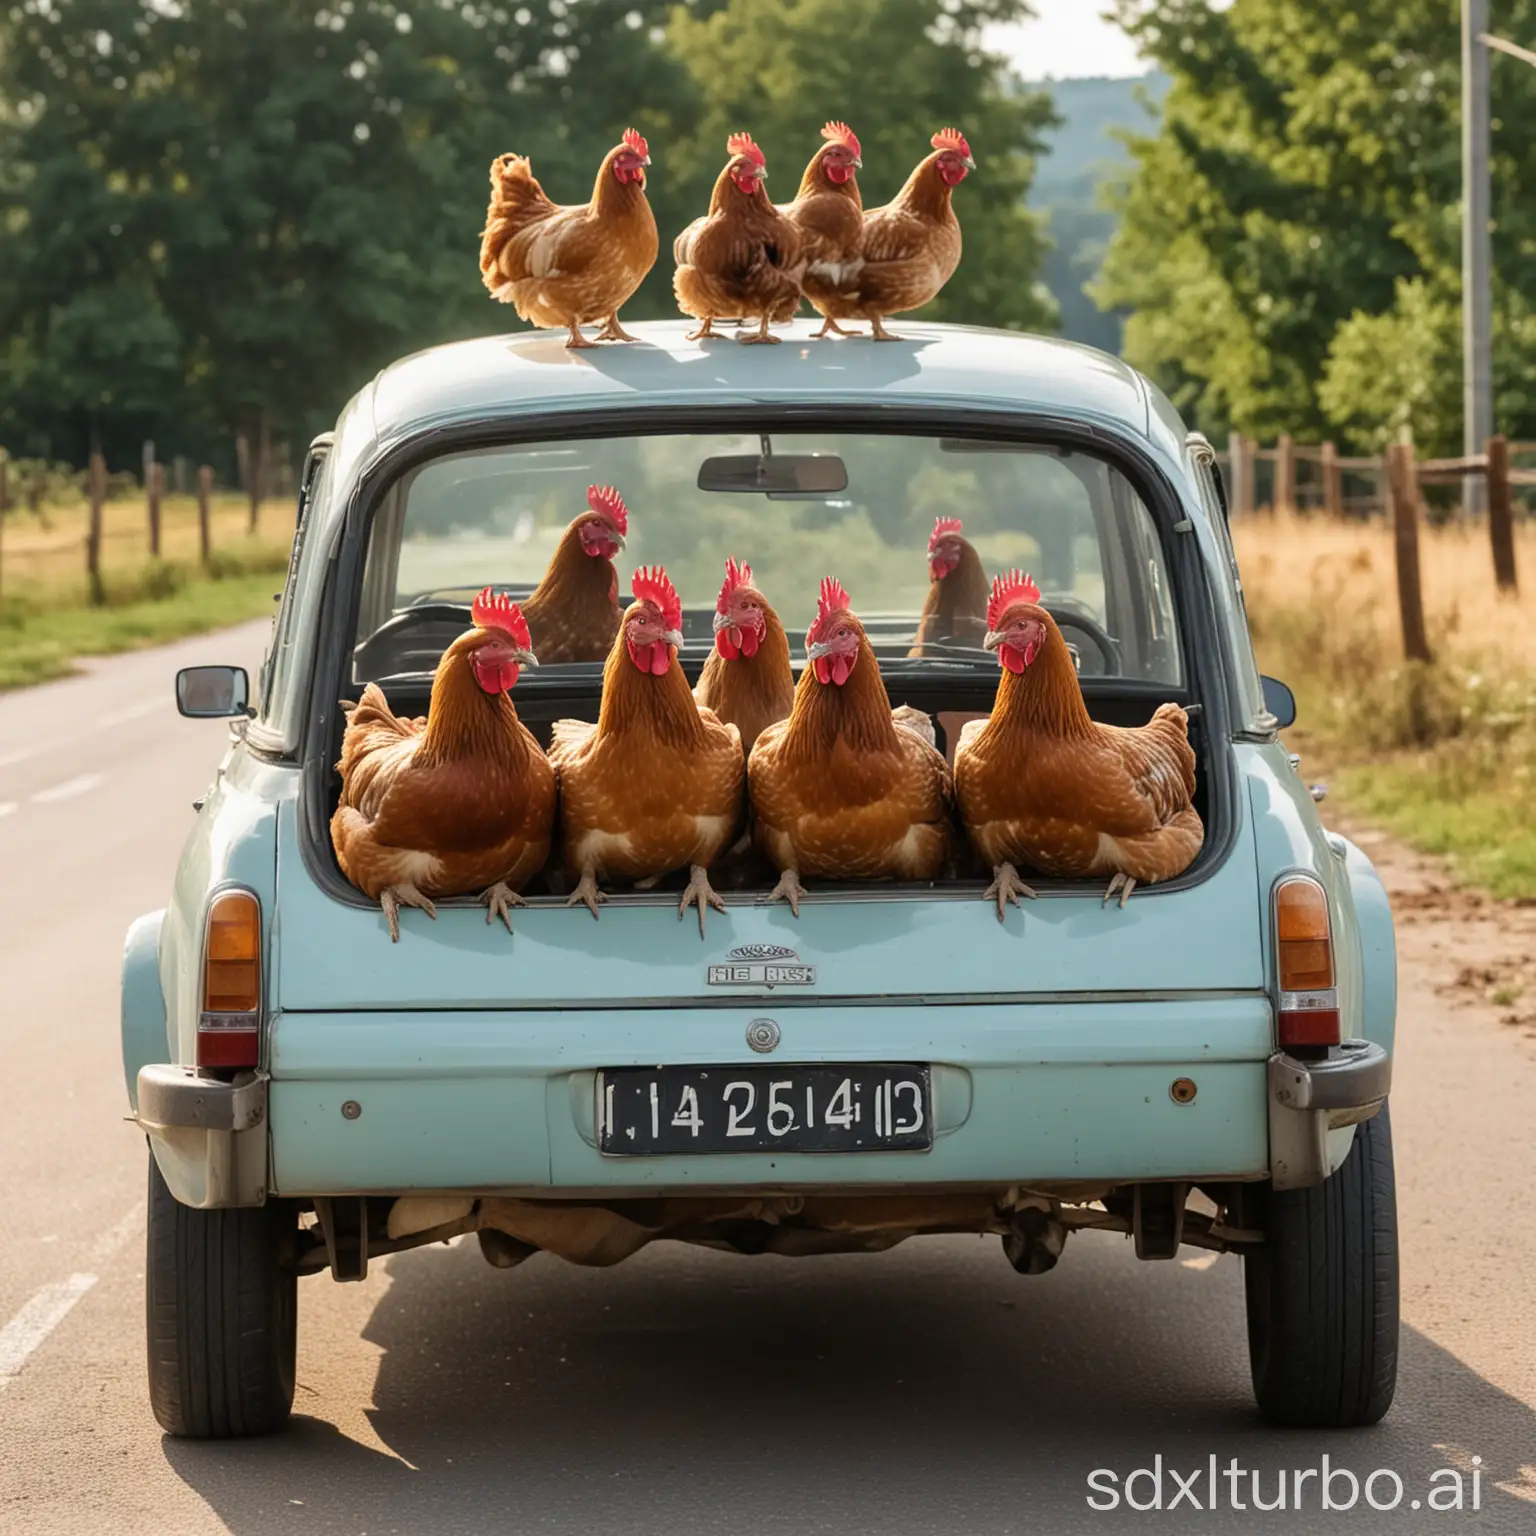 Hen-Driving-a-Car-Comical-Farmyard-Scene